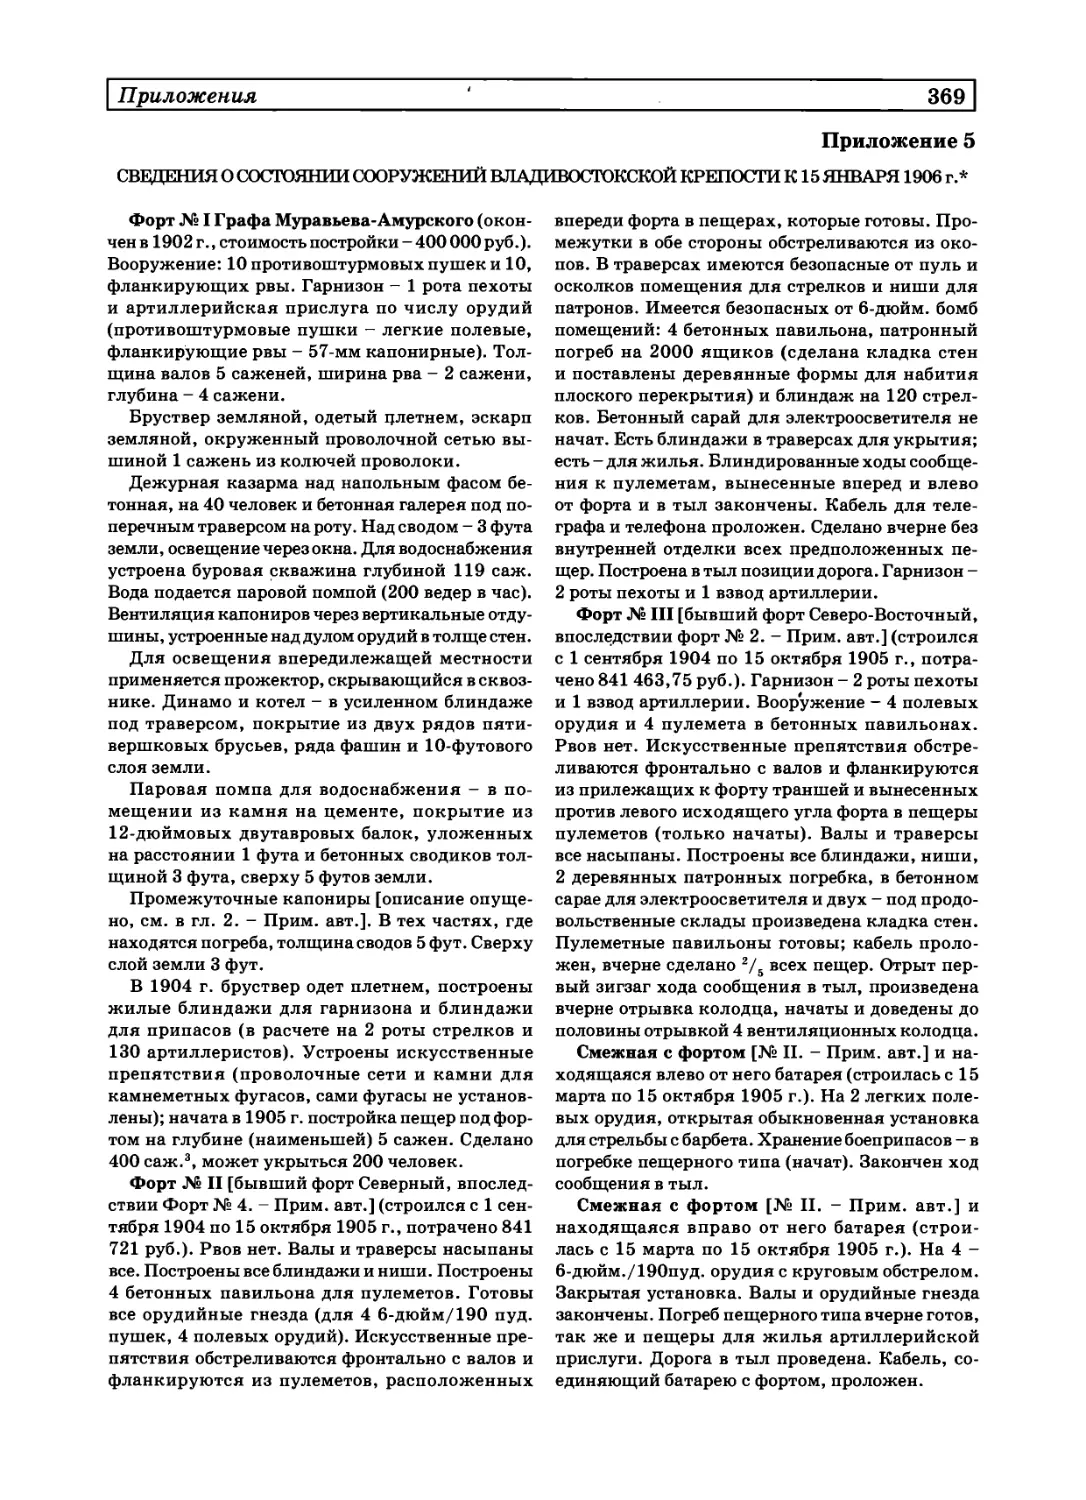 5. Сведения о состоянии сооружений Владивостокской крепости к 15 января 1906 г.